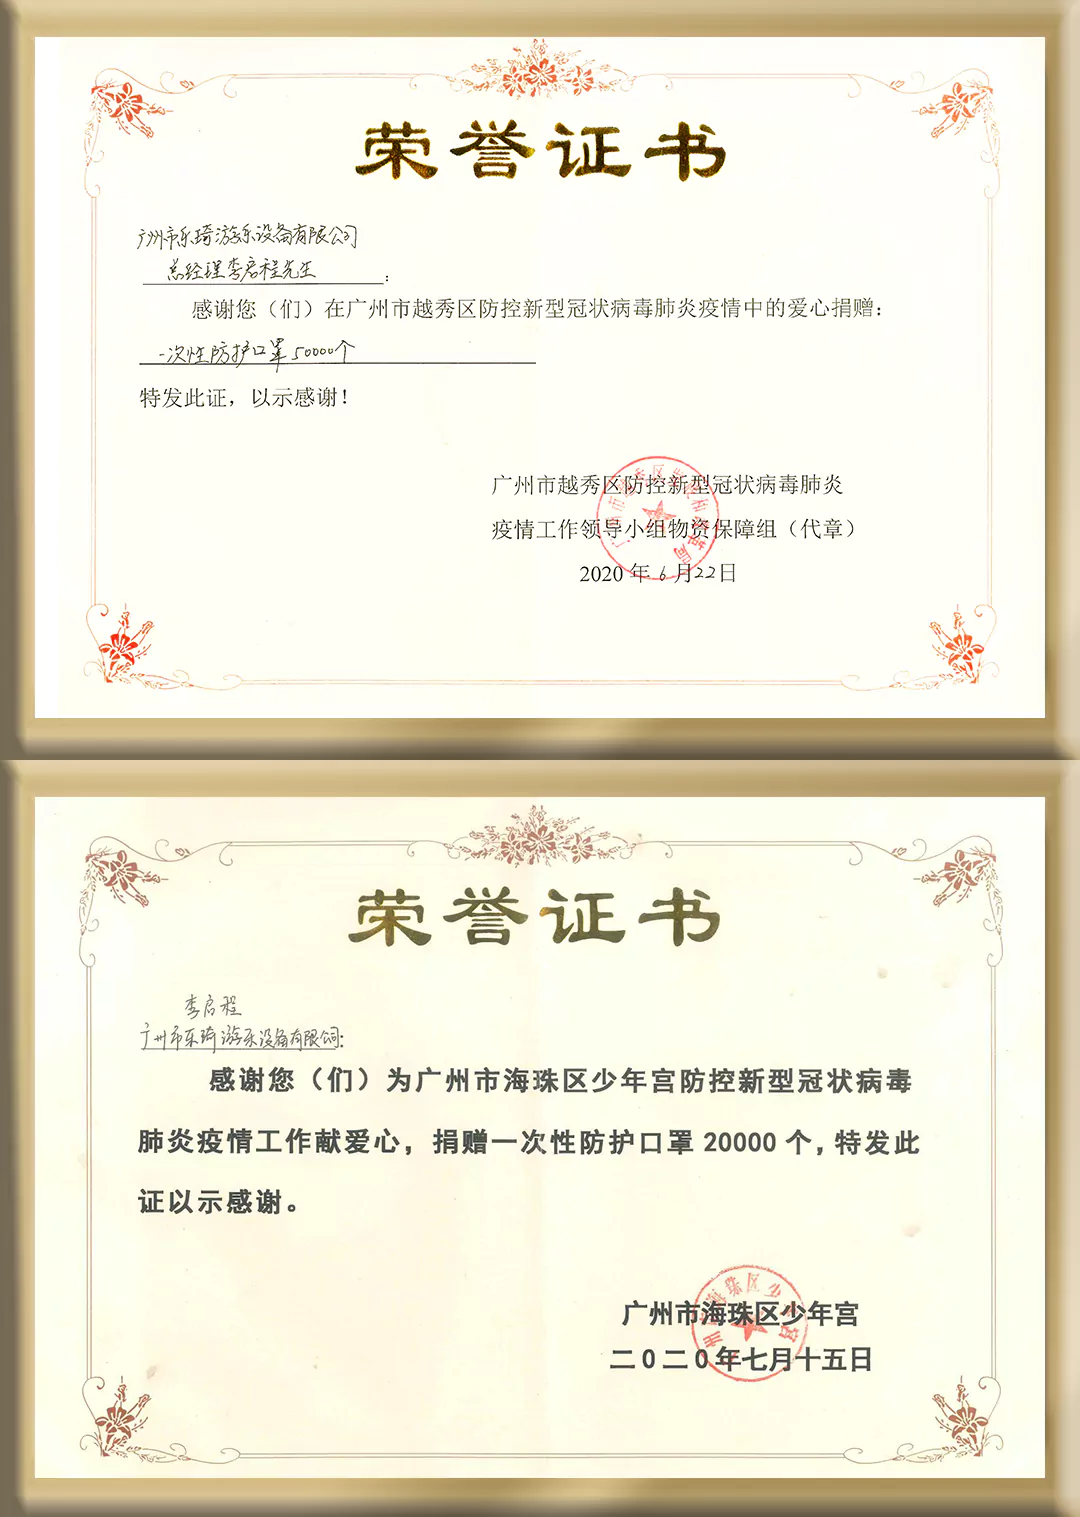 9-Certificate-1